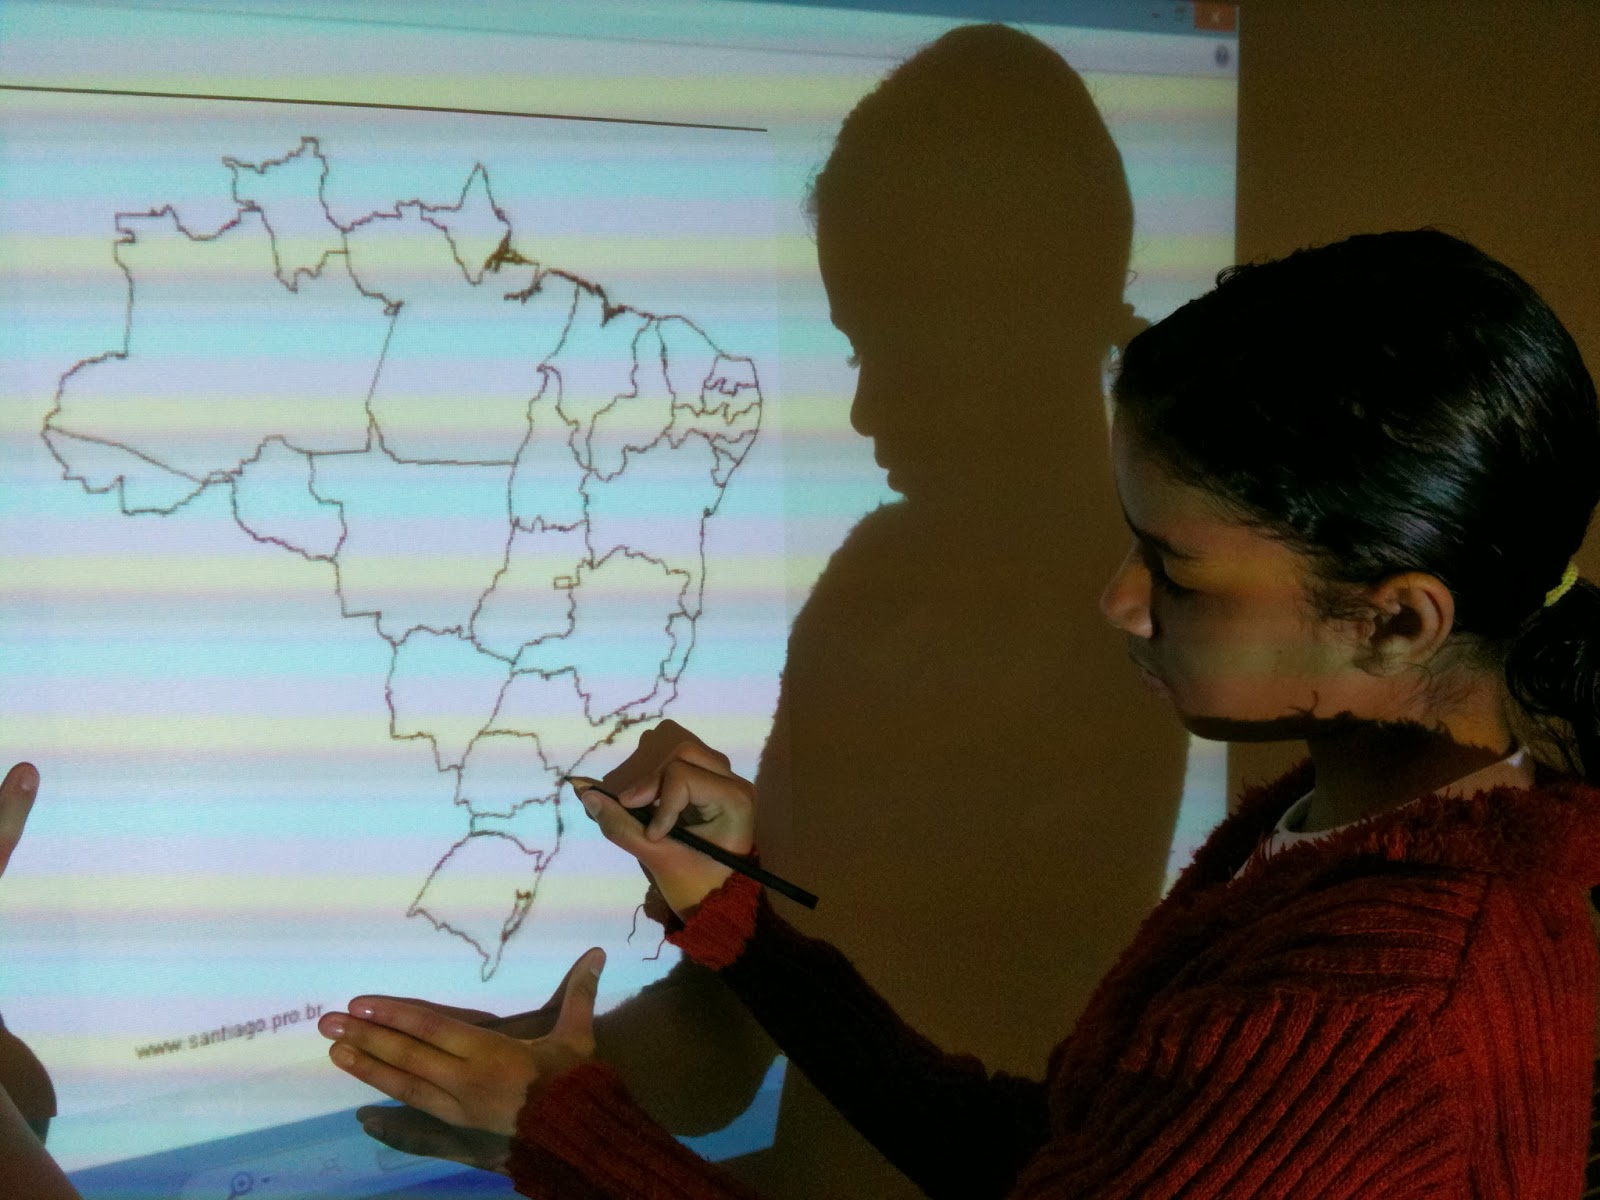 6° ano. Elaboração de mapa com auxílio de projetor 2013. Foto: Santiago Siqueira / www.santiago.pro.br